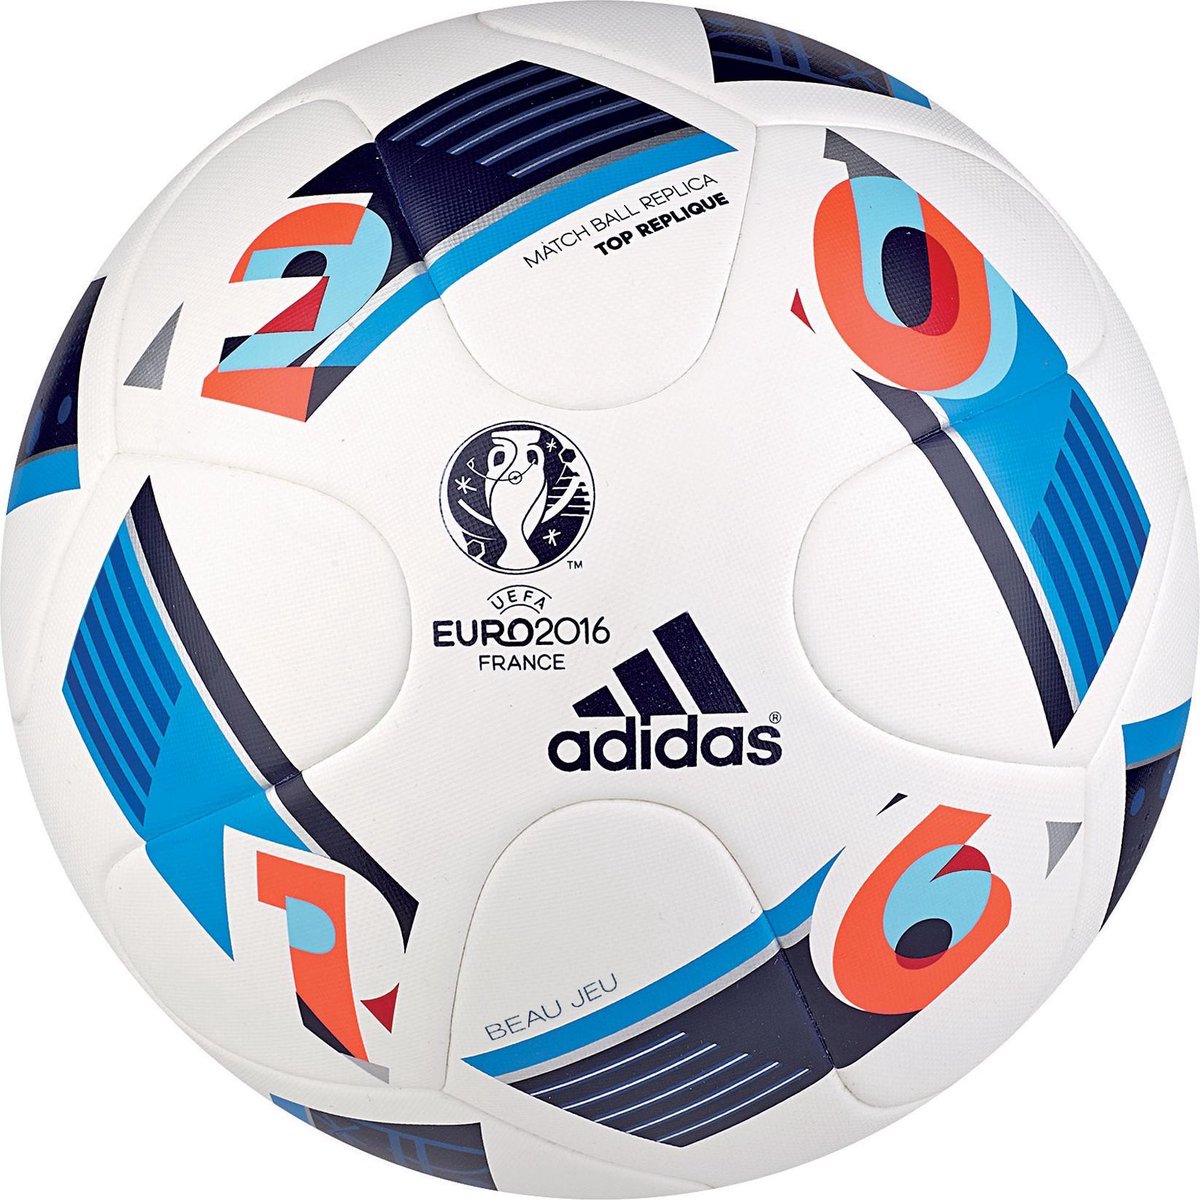 4056558155996 UPC Adidas Euro 2016 Top Replique Fodbold - Størrelse 5